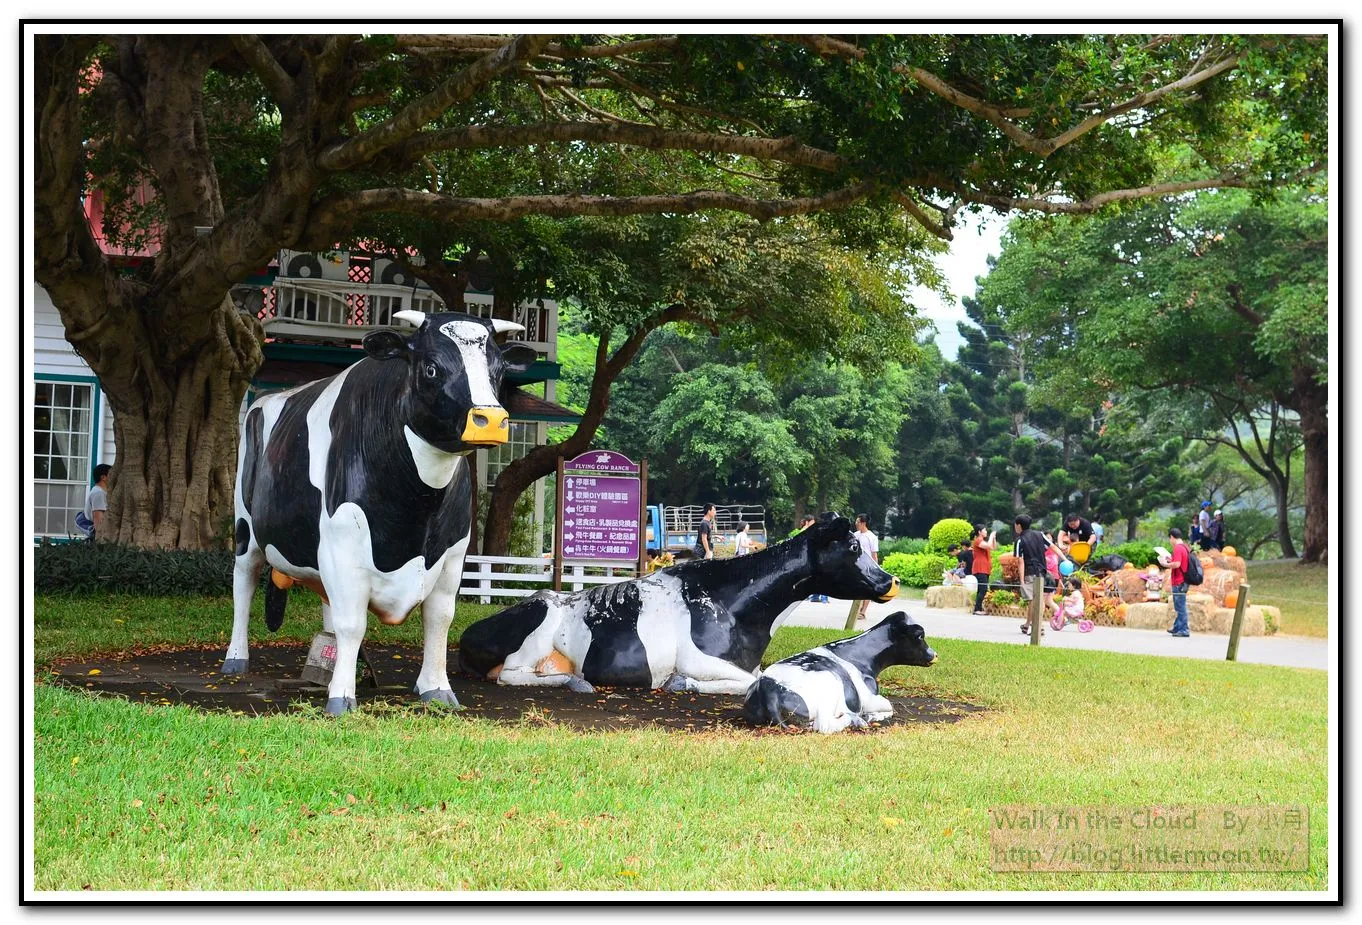 飛牛牧場廣場 - 乳牛模型